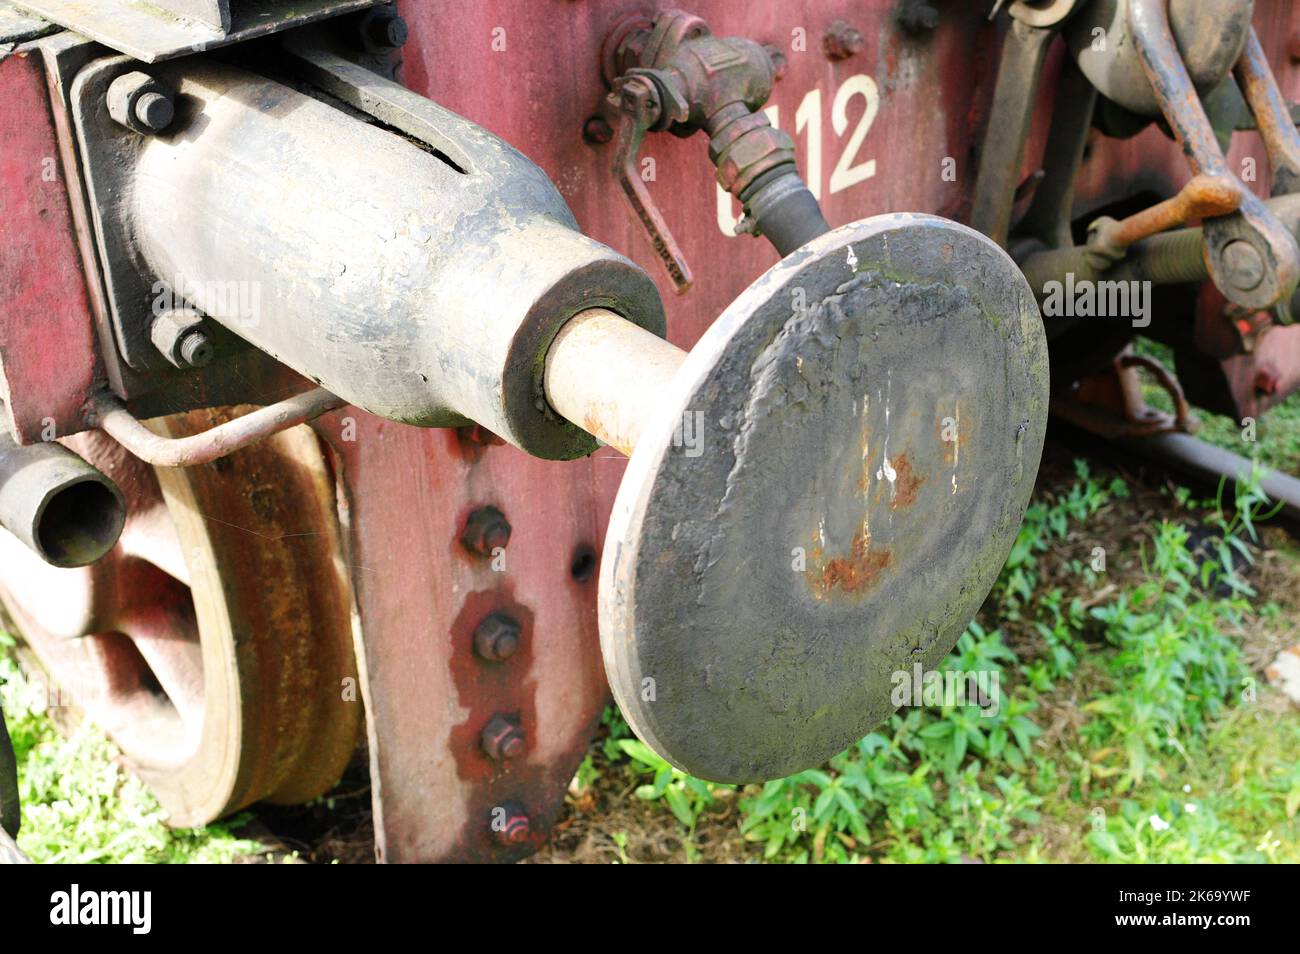 Der vordere Teil einer Dampflokomotive. Ein Fragment der Räder, Kolben und Stoßfänger sind sichtbar. Stockfoto